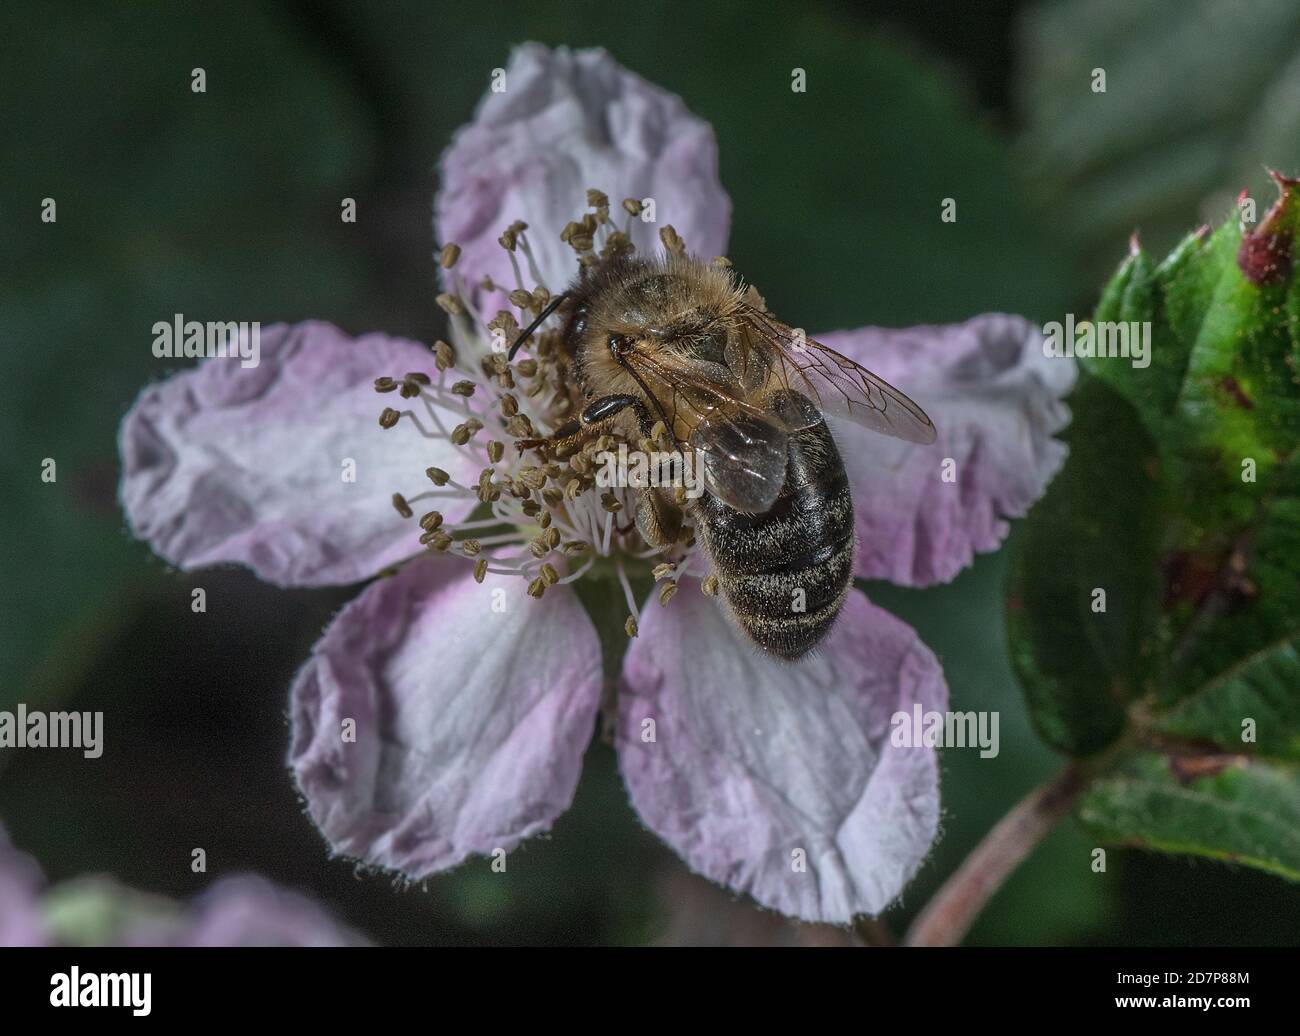 Abeille noire européenne, APIS mellifera mellifera, une sous-espèce d'abeille occidentale, se nourrissant de la fleur rose de Bramble. Nouvelle forêt. Banque D'Images